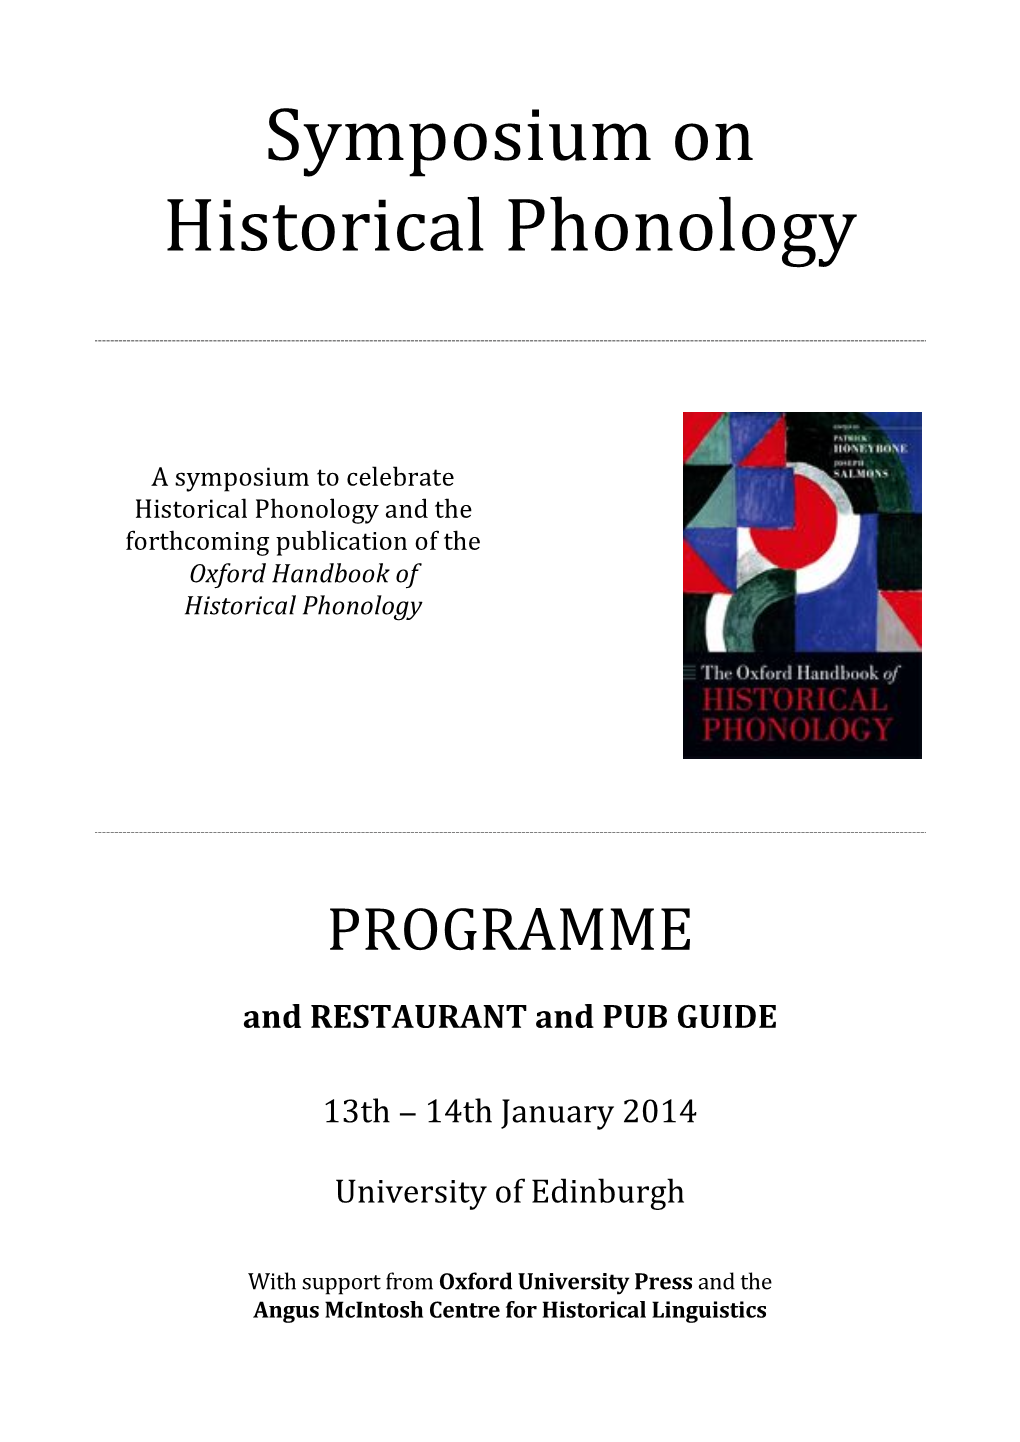 Symposium on Historical Phonology